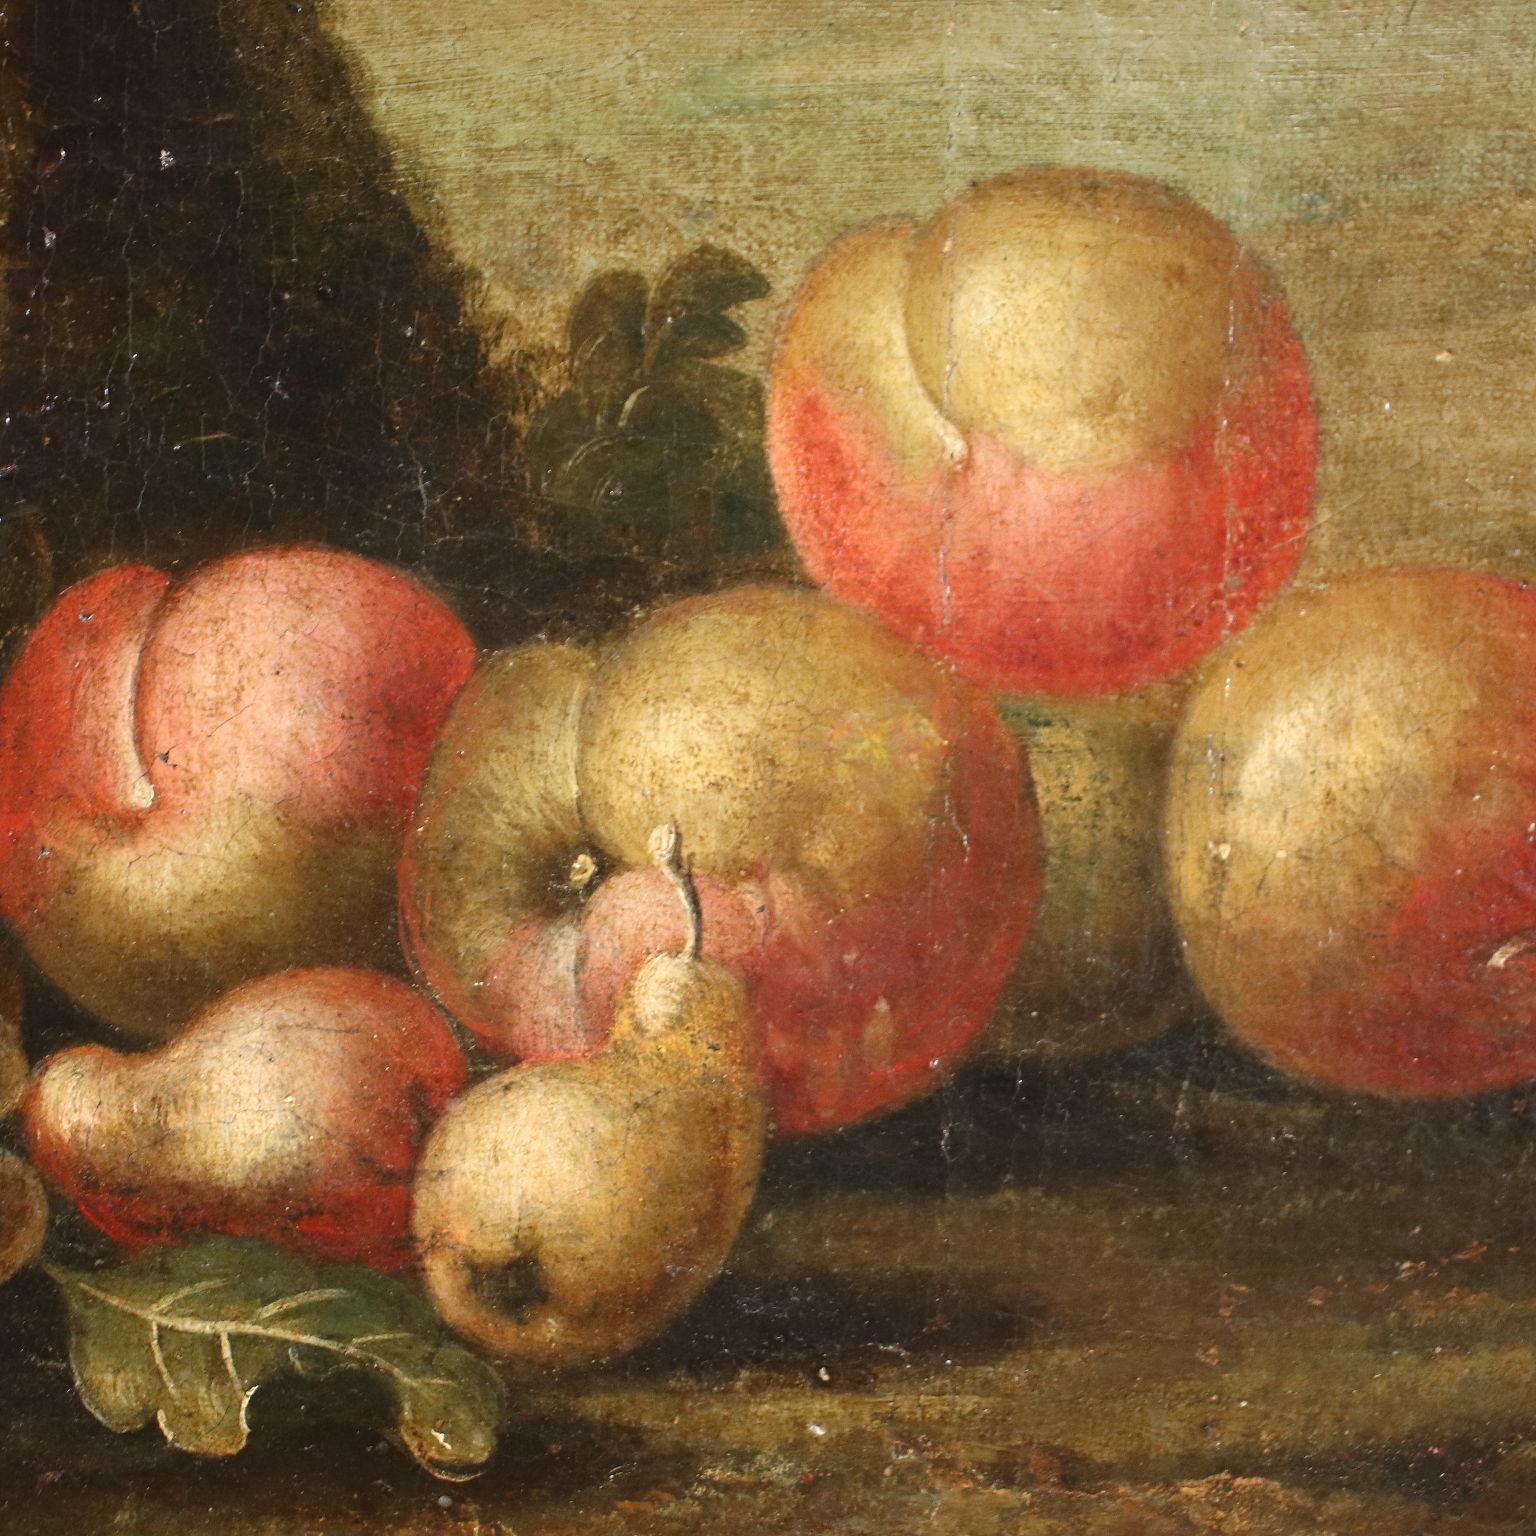 Peinture à l'huile sur toile. La composition n'est pas une nature morte traditionnelle car les fruits (raisins et pommes) et l'oiseau sont insérés dans un grand paysage, comme des éléments ajoutés au premier plan ; derrière eux s'ouvre une campagne